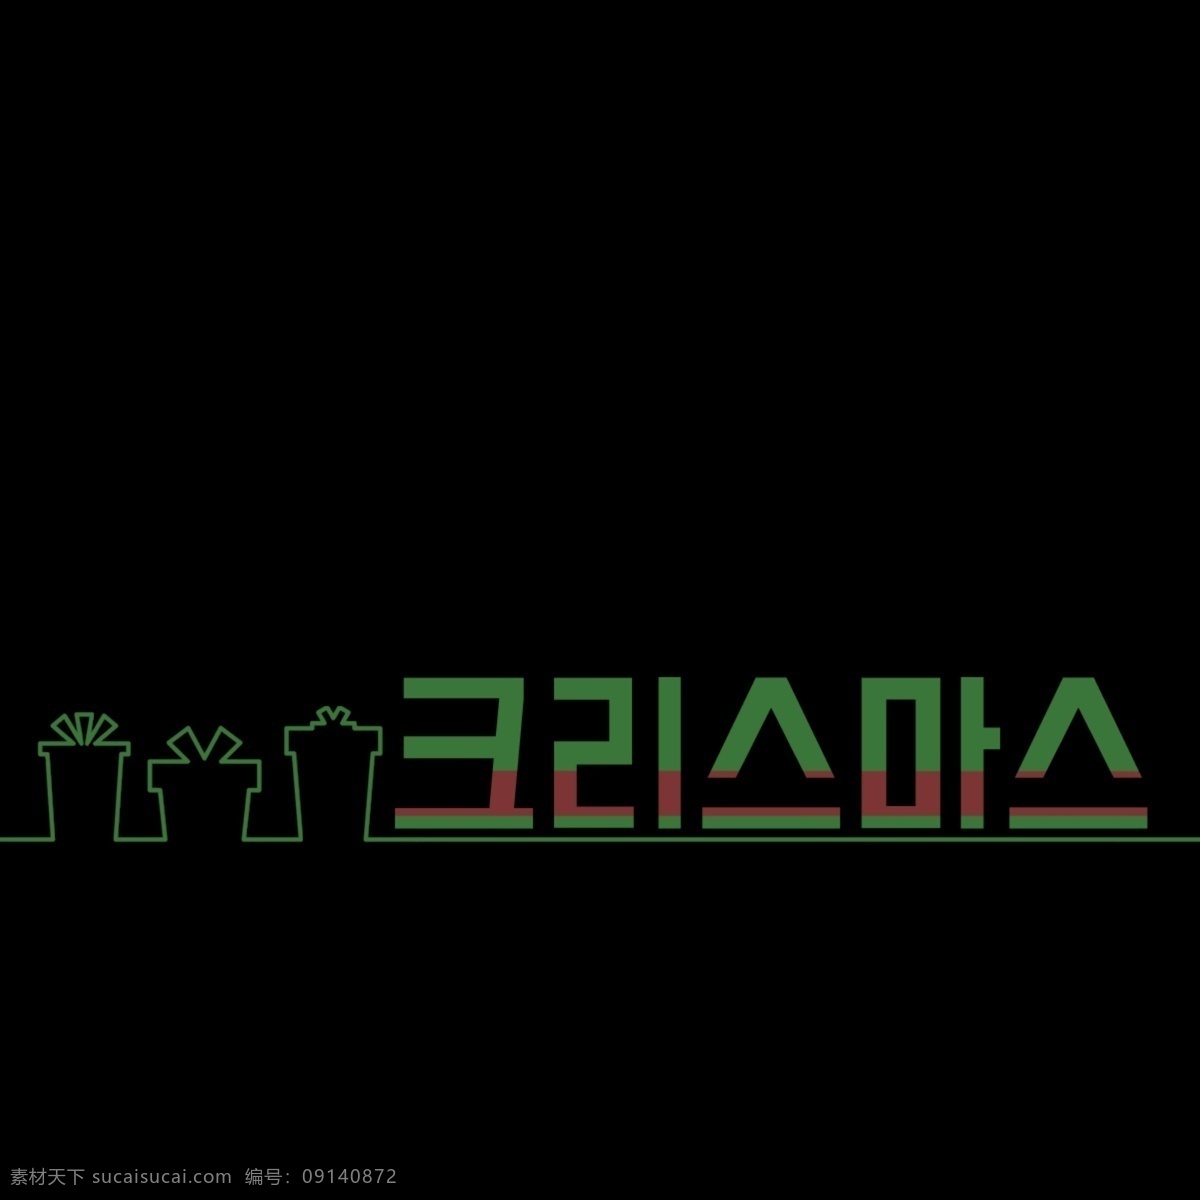 可爱 圣诞 礼物 韩国 字体 greenbricks 动画片 圣诞节 黄色 礼品 简单 谢和 coreldraw 中